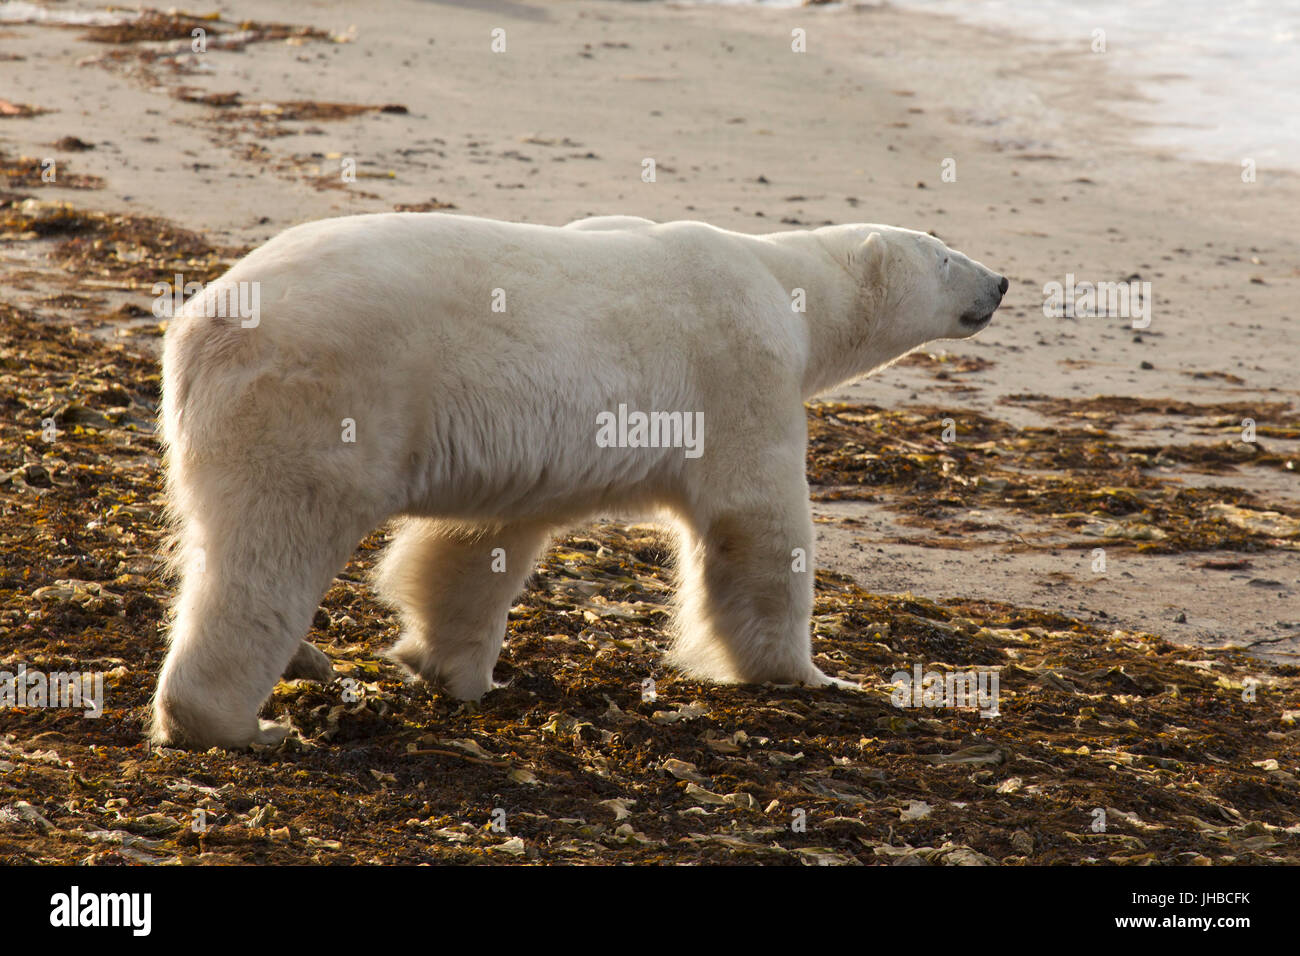 L'ours polaire (Ursus maritimus) sur une plage au Manitoba, Canada. Les ours polaires sont et carnivores vivent dans l'hémisphère nord. Banque D'Images